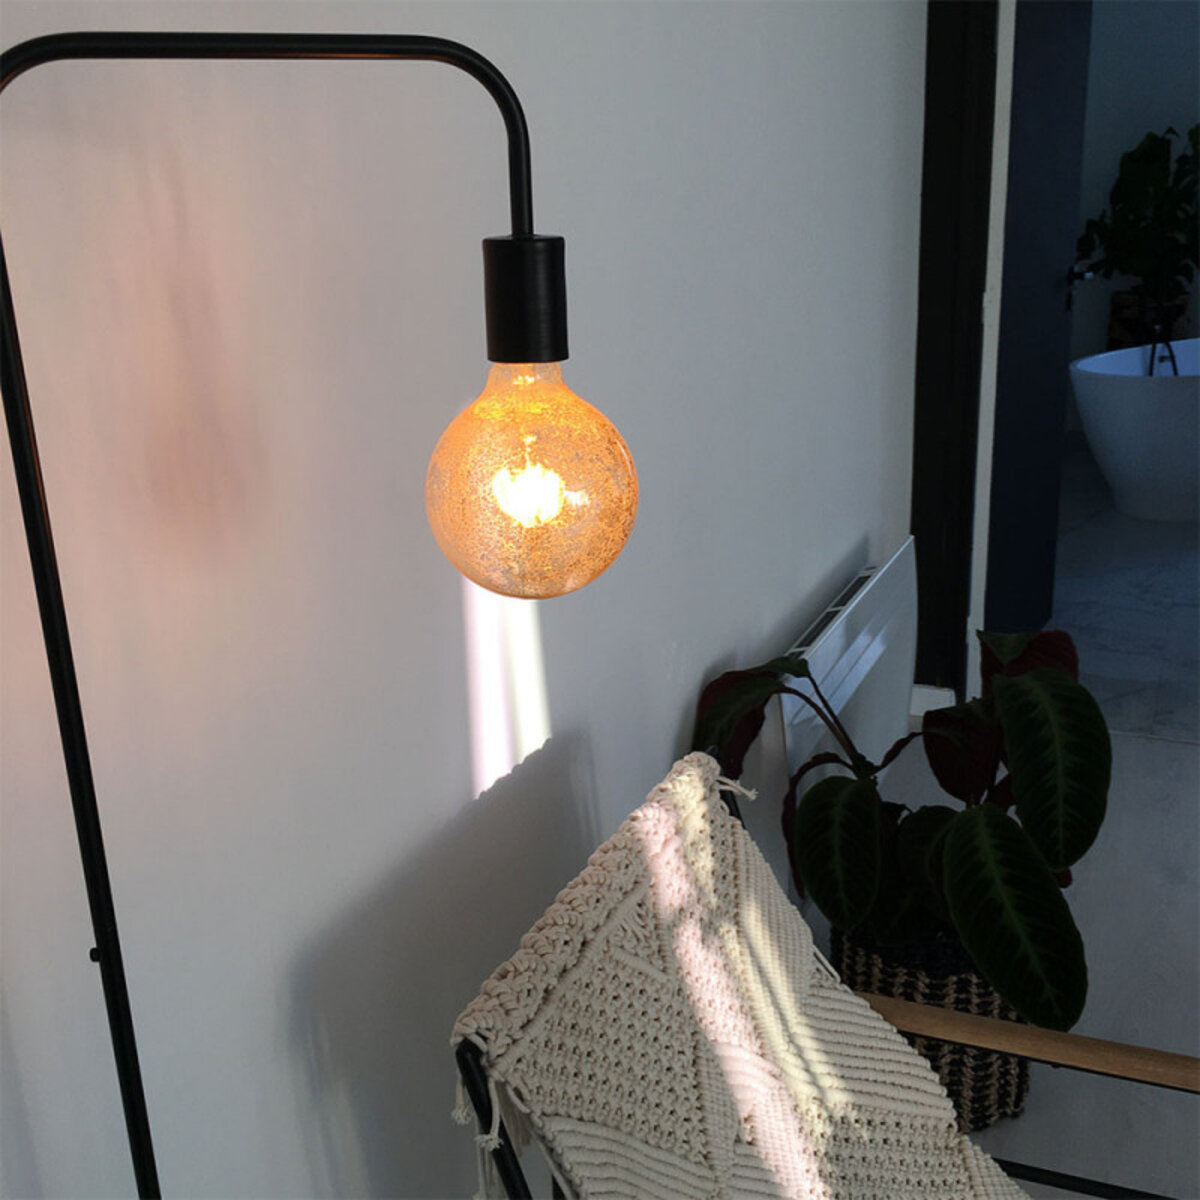 Ampoule LED G125, culot E27, consommation de 4W pour une équivalence de  28W, intensité lumineuse de 300 lumens, lumière blanc ch